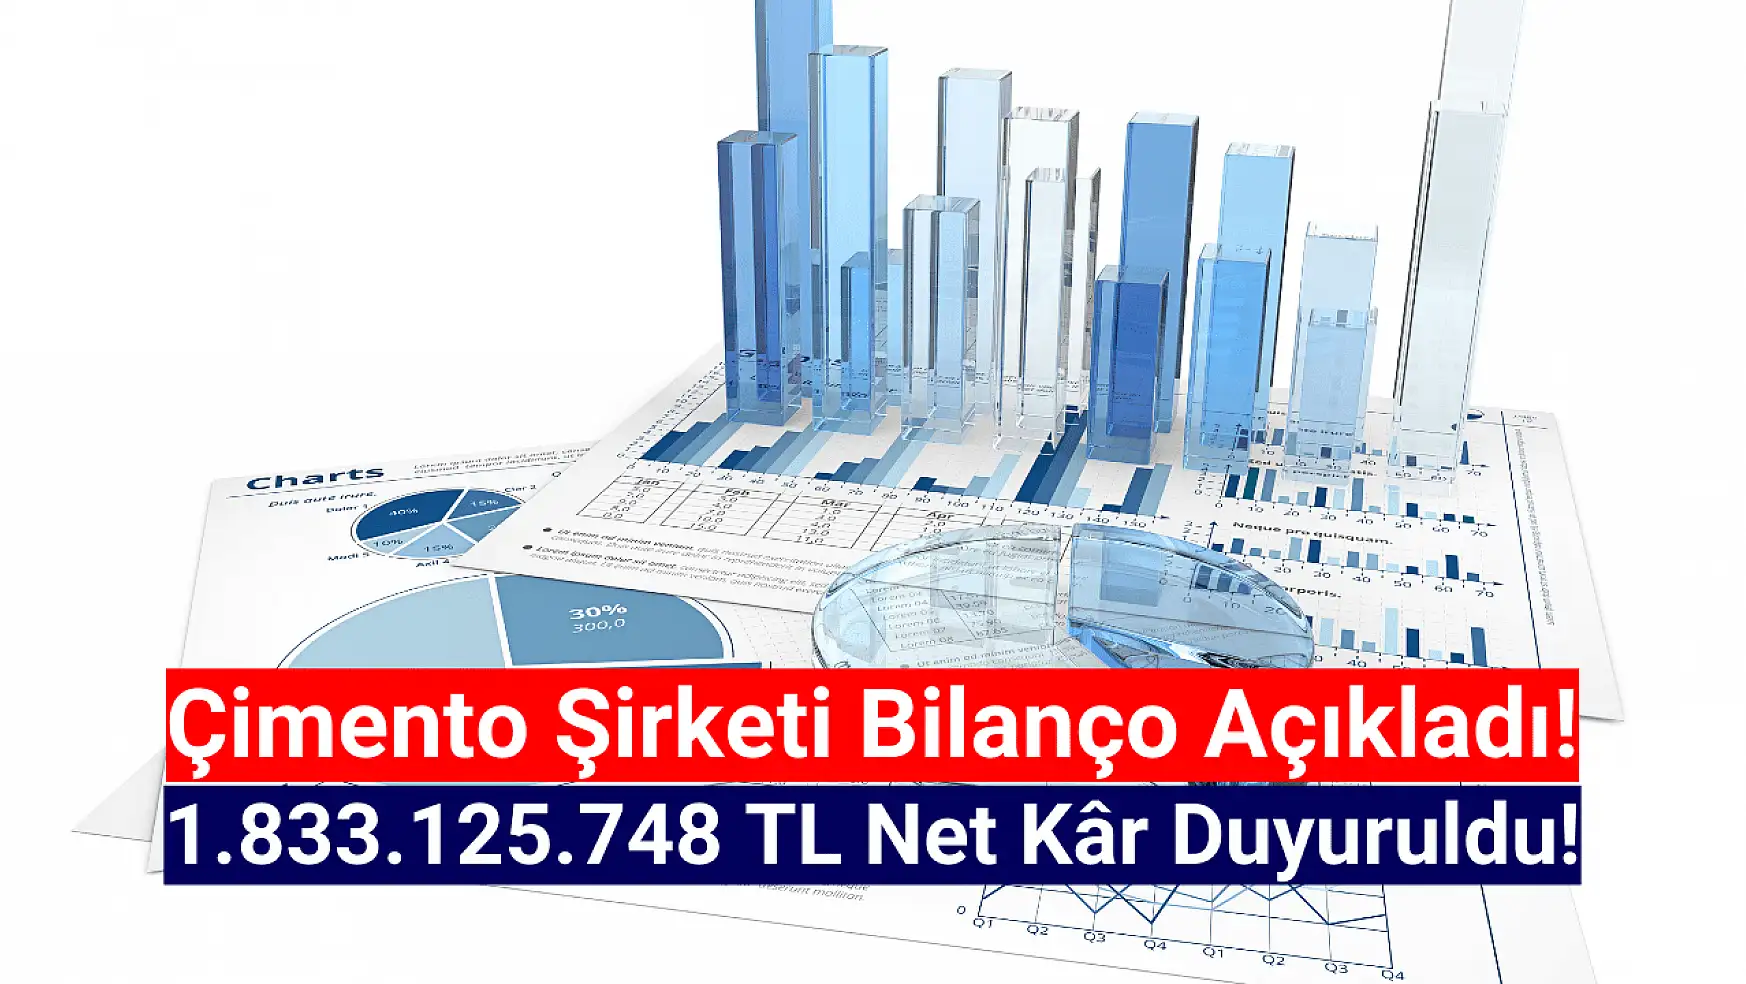 Çimento şirketi 1.833.125.748 TL net kâr açıkladı!